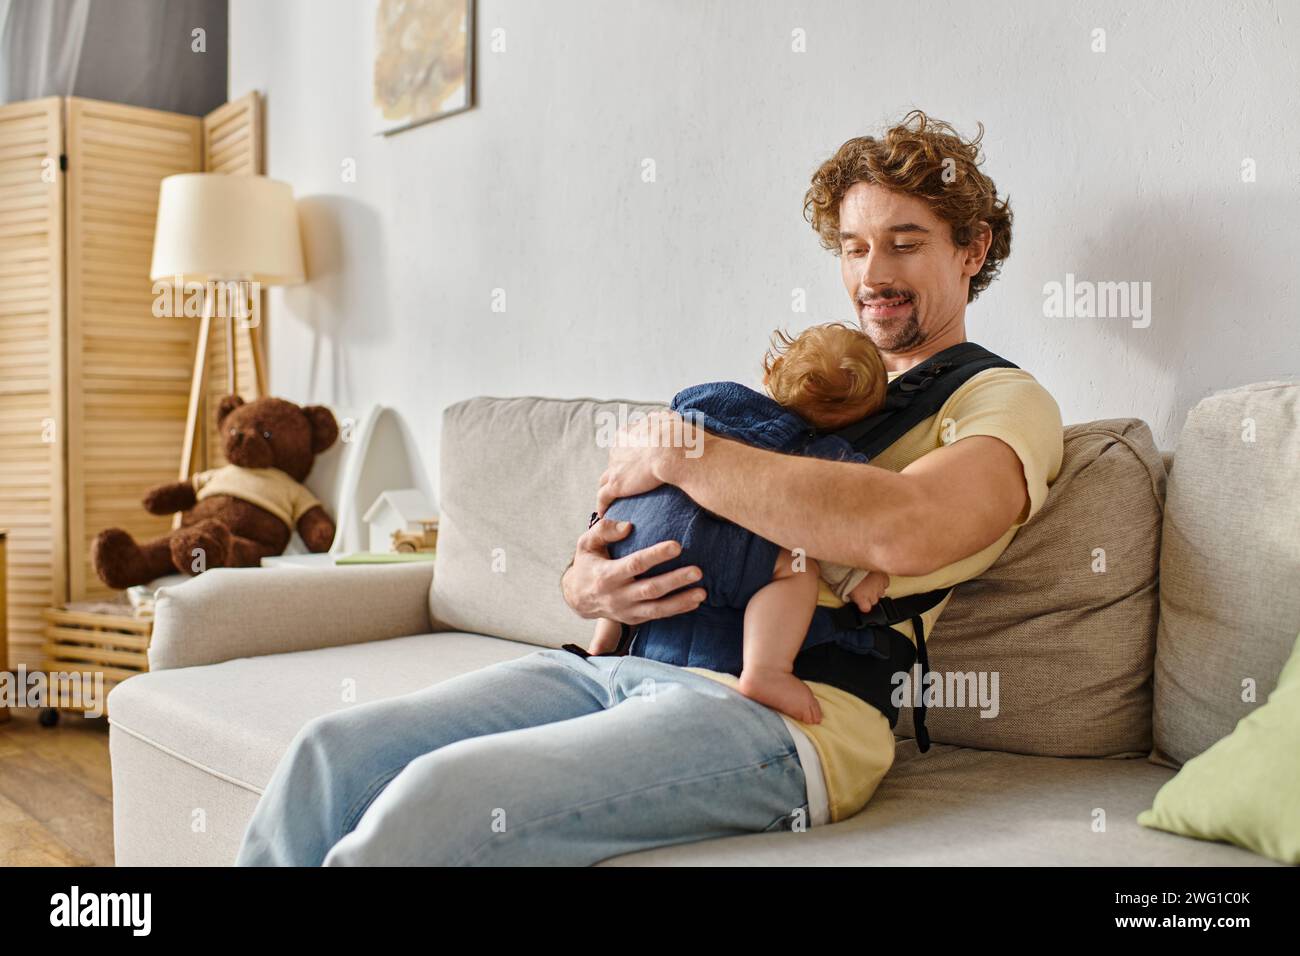 Glücklicher Vater mit lockigen Haaren, der auf der Couch sitzt, mit einem kleinen Sohn in Babytrage, Vaterschaft und Liebe Stockfoto